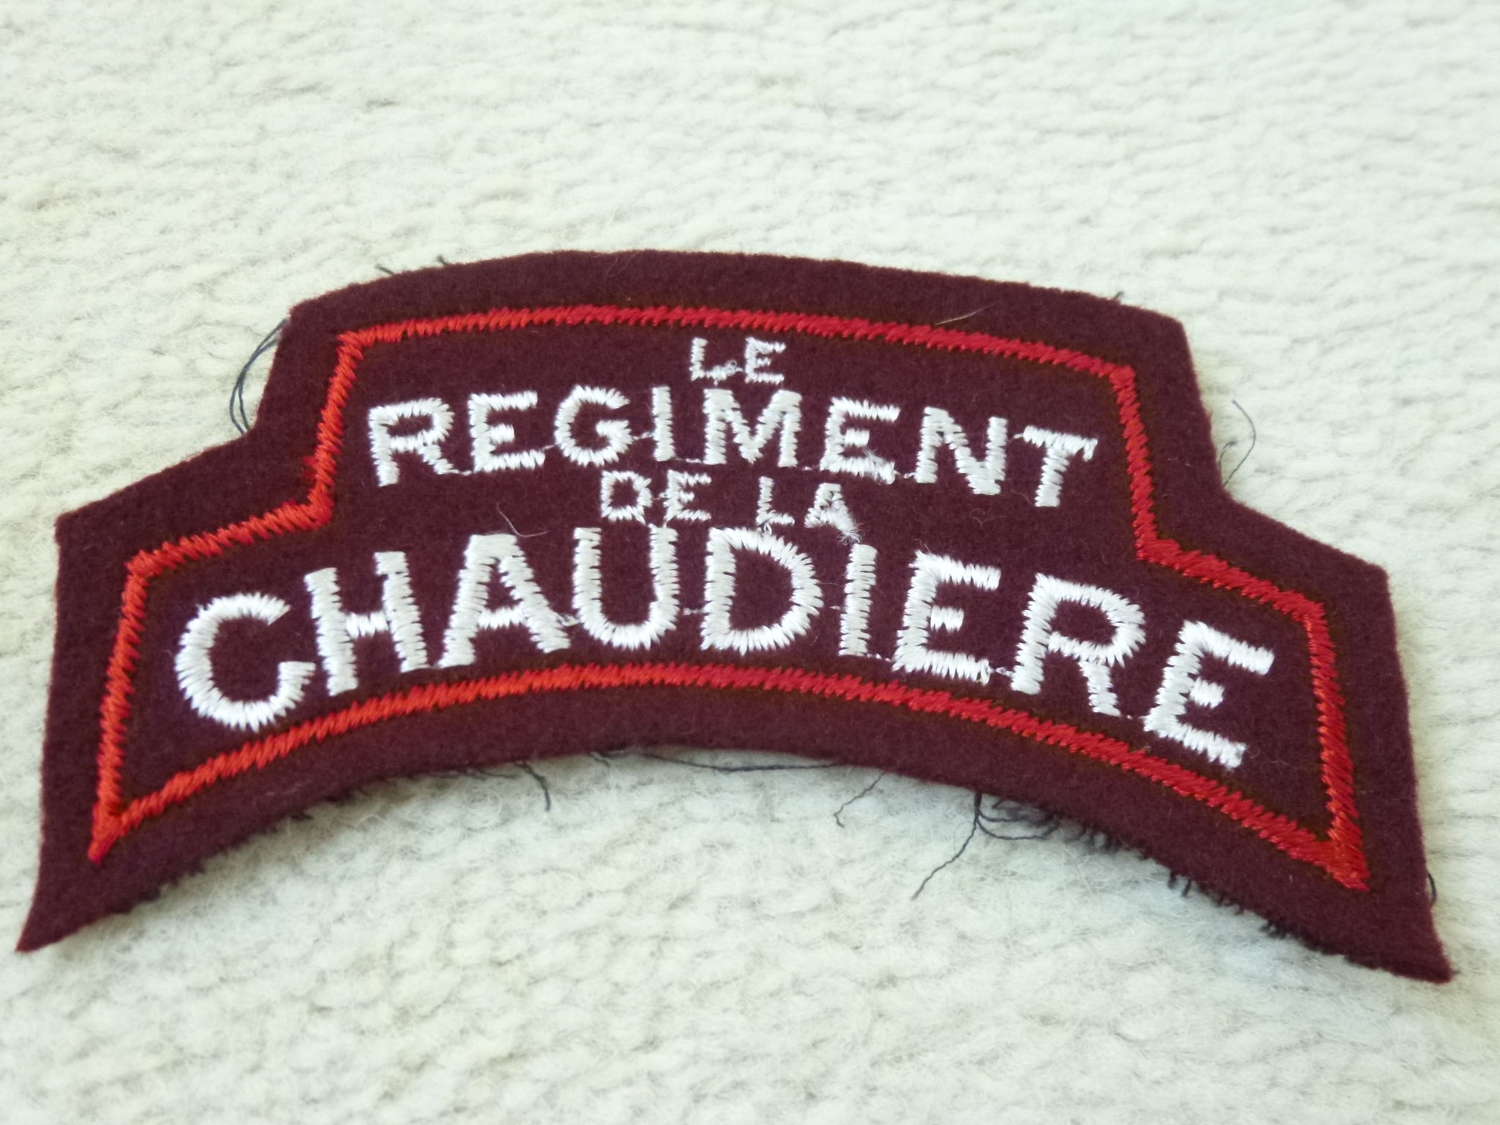 Single Canadian Regiment de la Chaudiere shoulder title